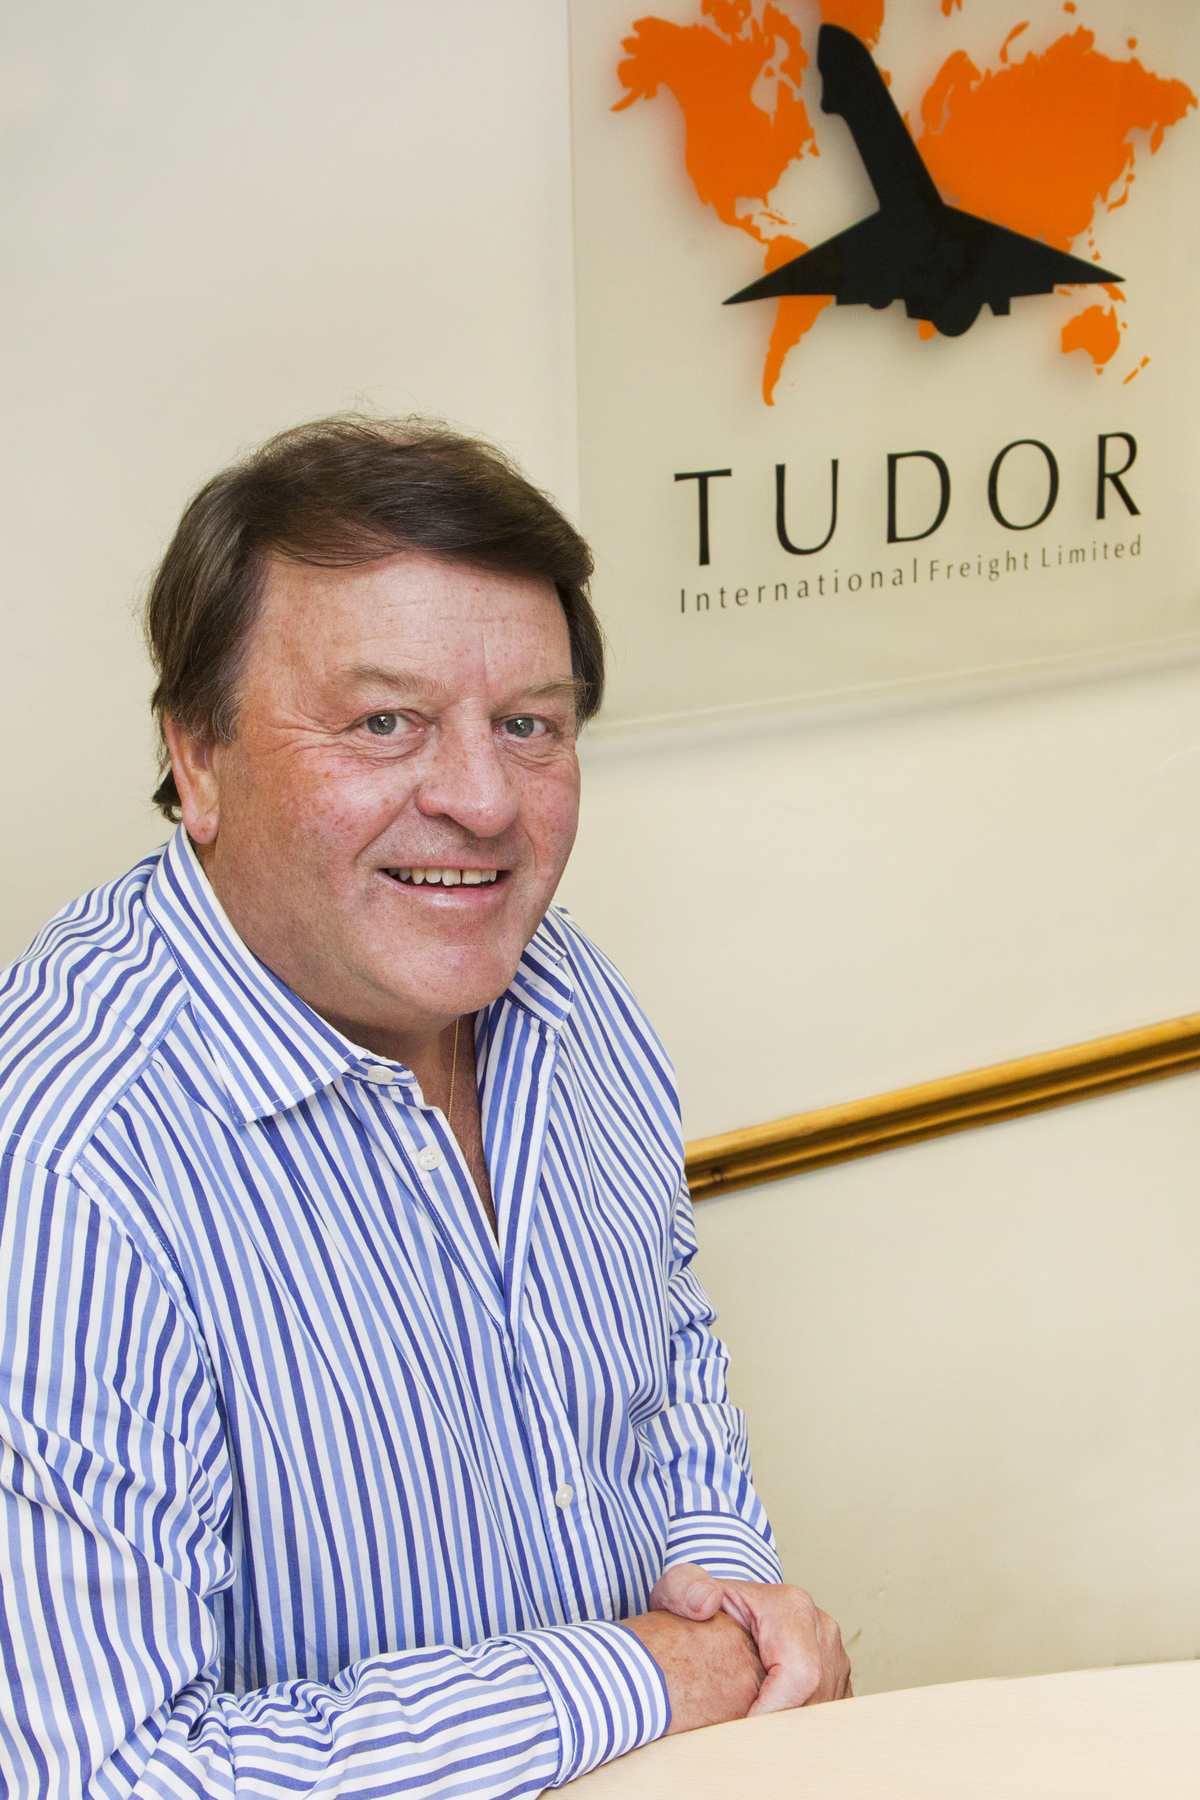 David Johnson, Tudor